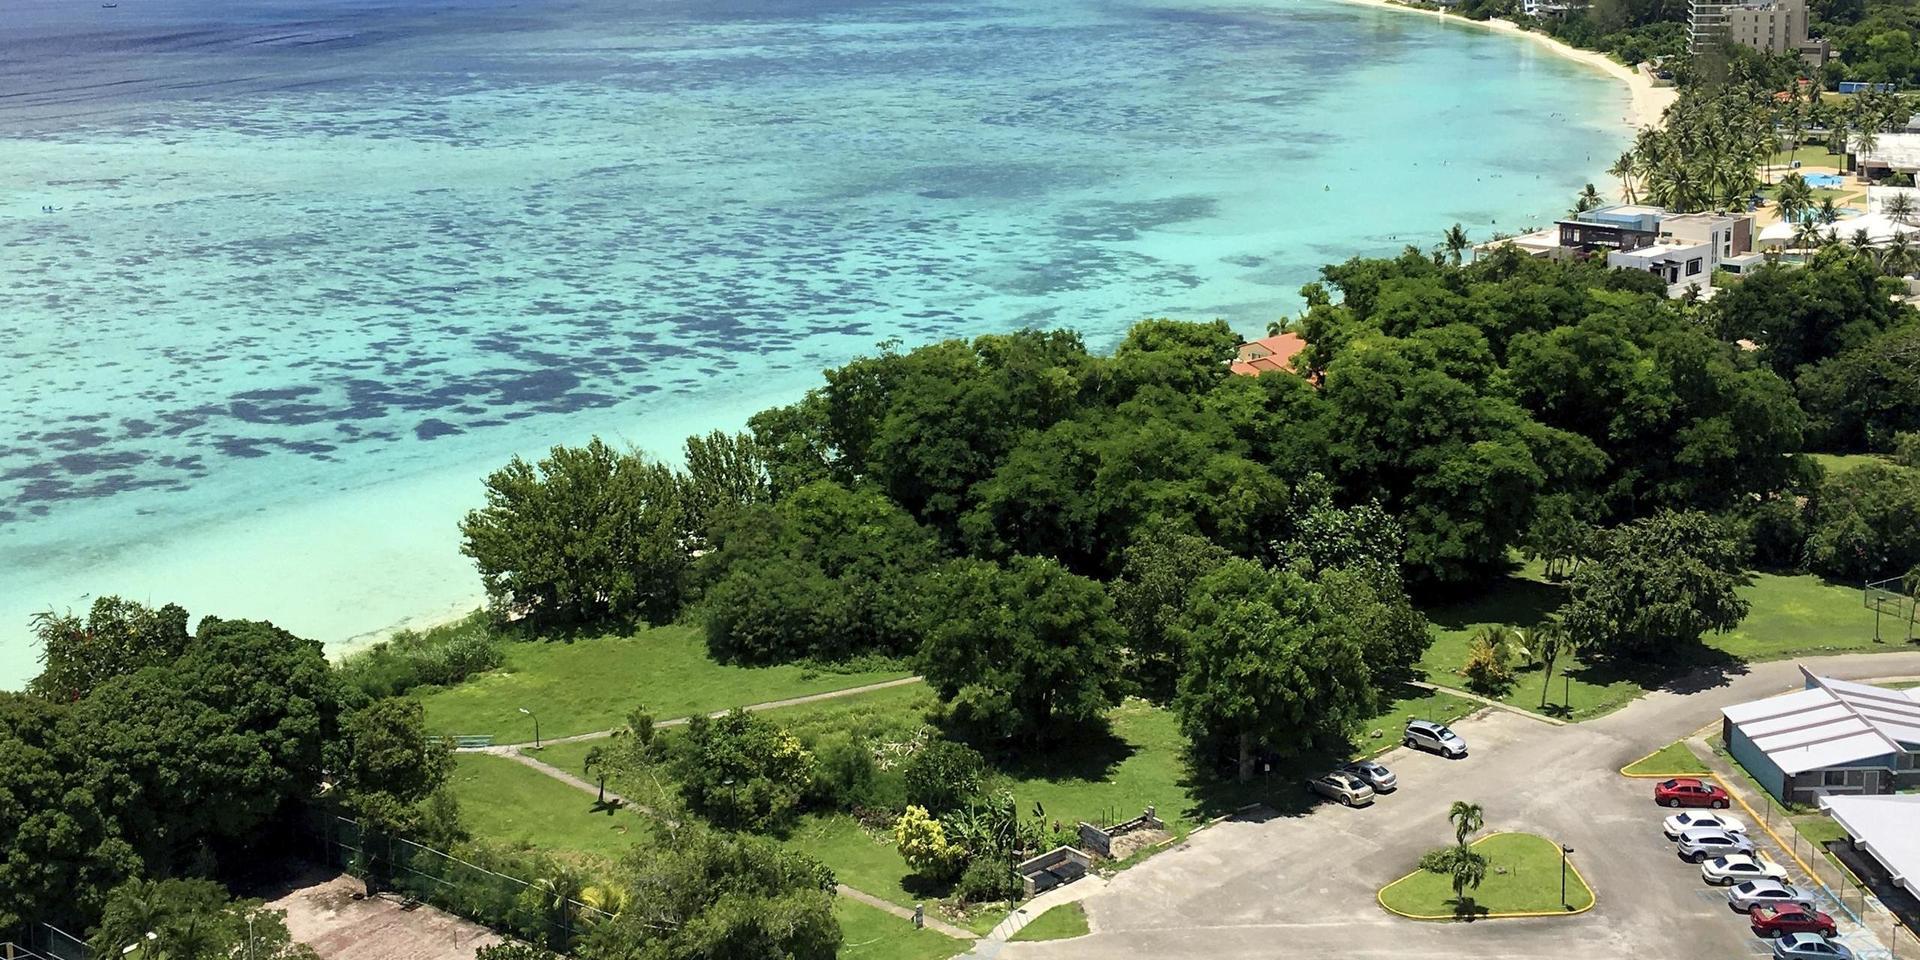 Det amerikanska territoriet Guam erbjuder besökare coronavaccin i hopp om att vända den dalande turismen som drabbat området. 